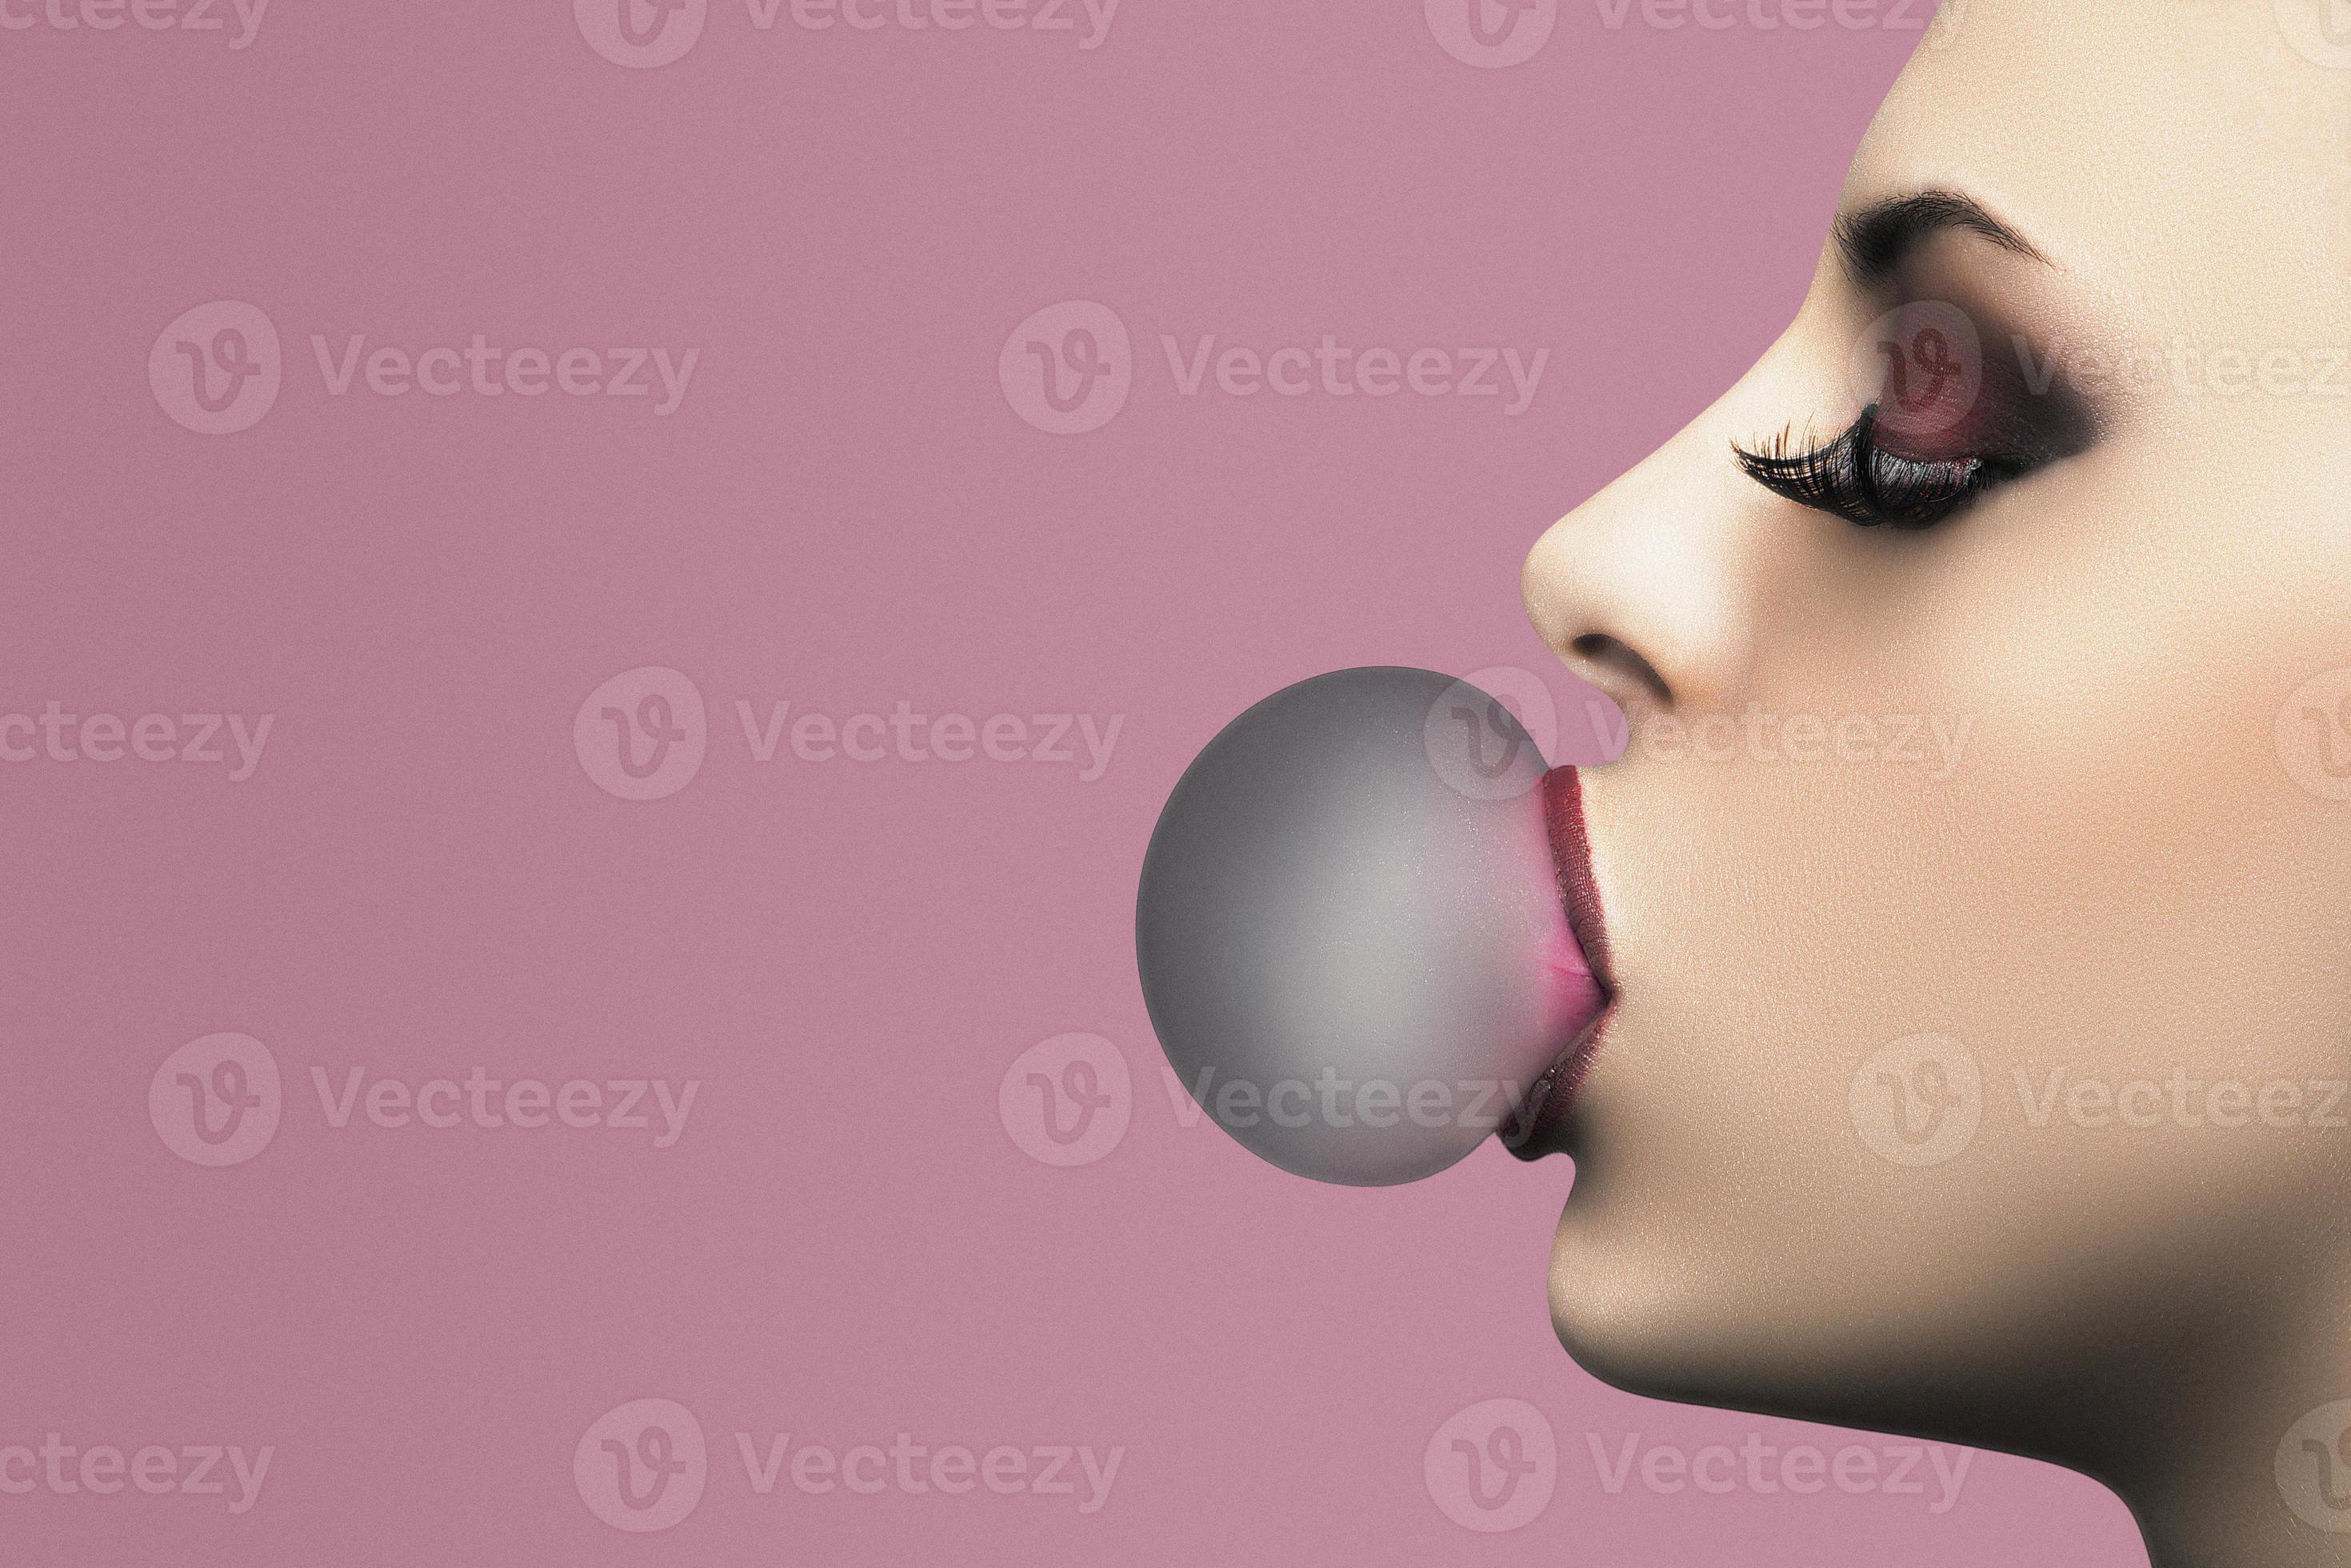 bert settle recommends woman blowing bubble gum pic